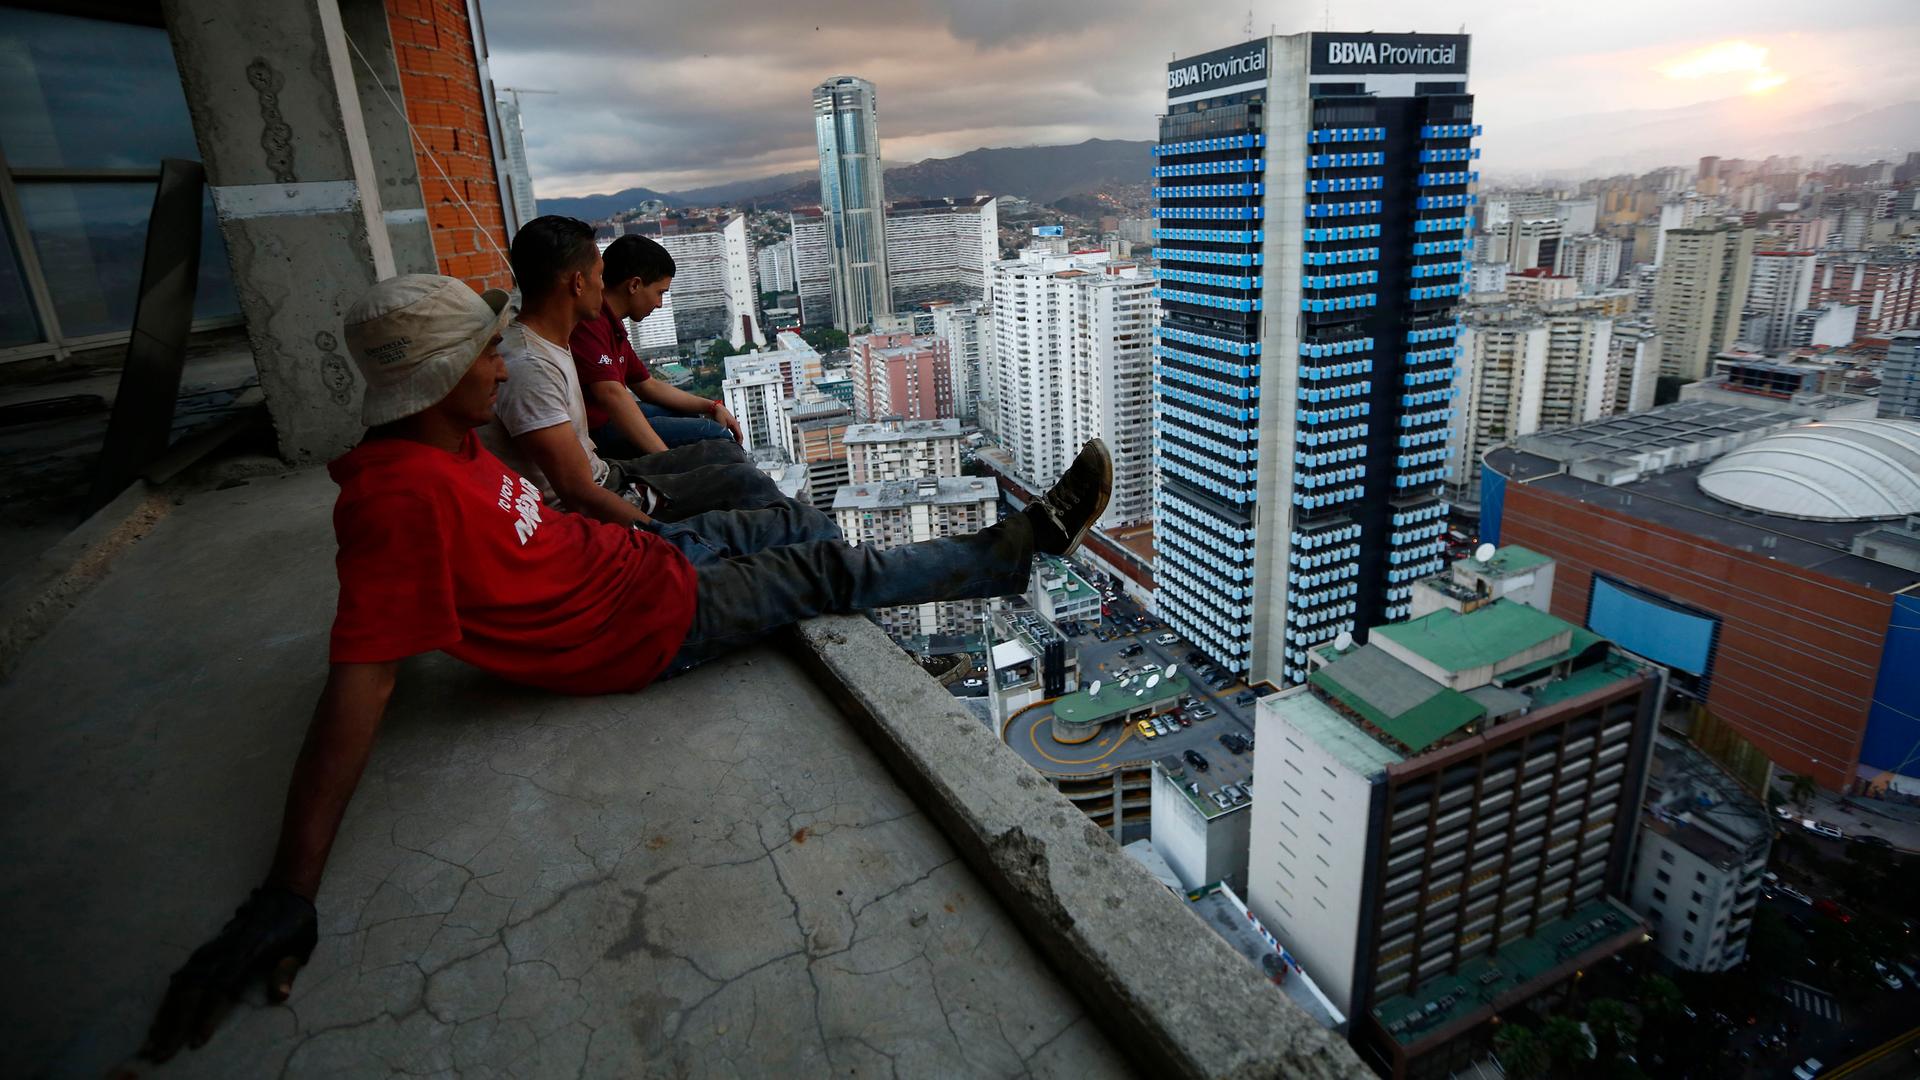 Tower of David, Caracas